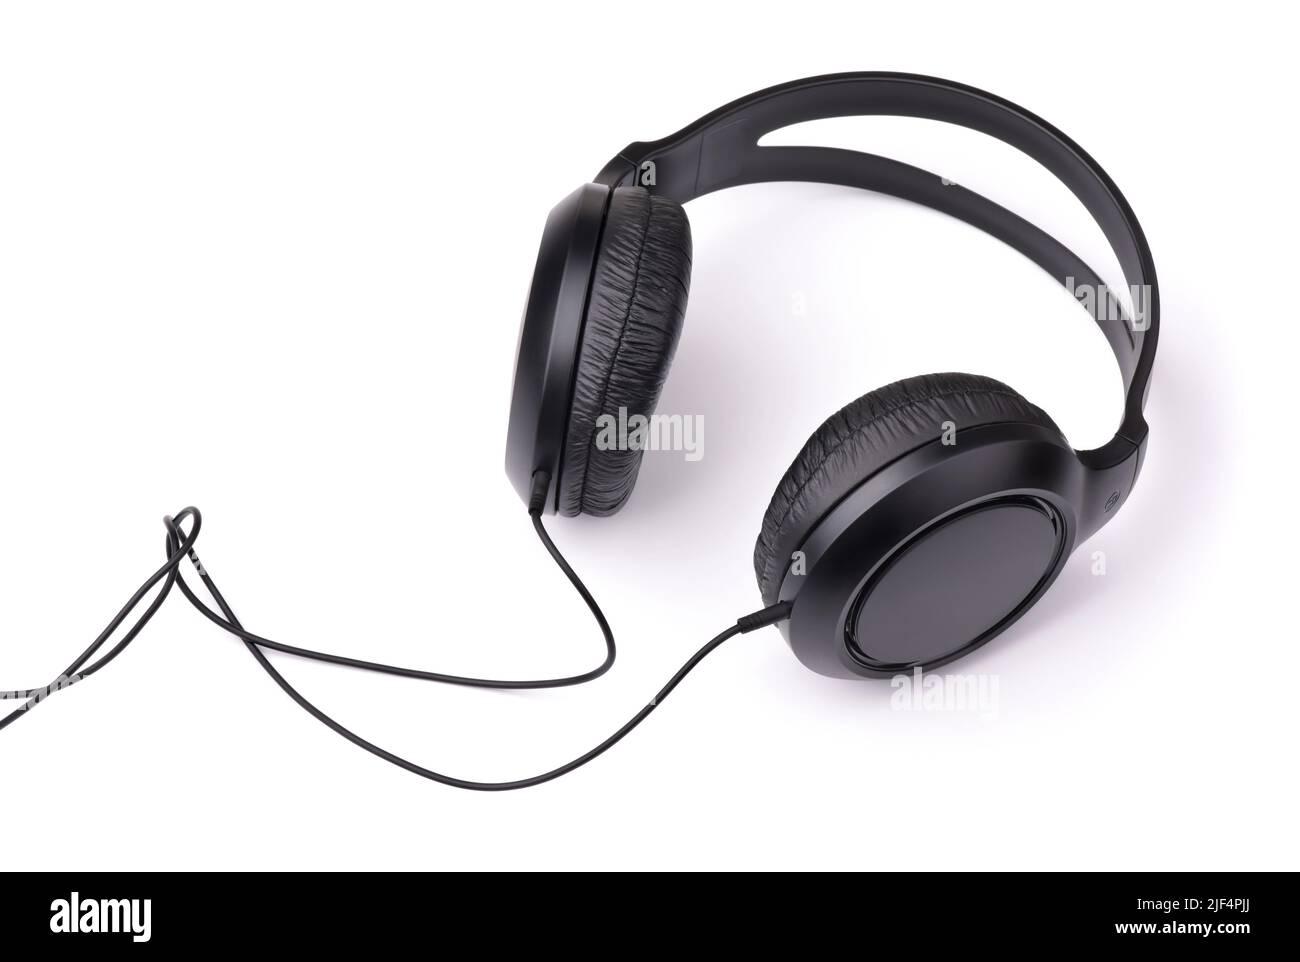 Professionelle Ohrhörer mit Kabel in Schwarz, isoliert auf Weiß Stockfoto